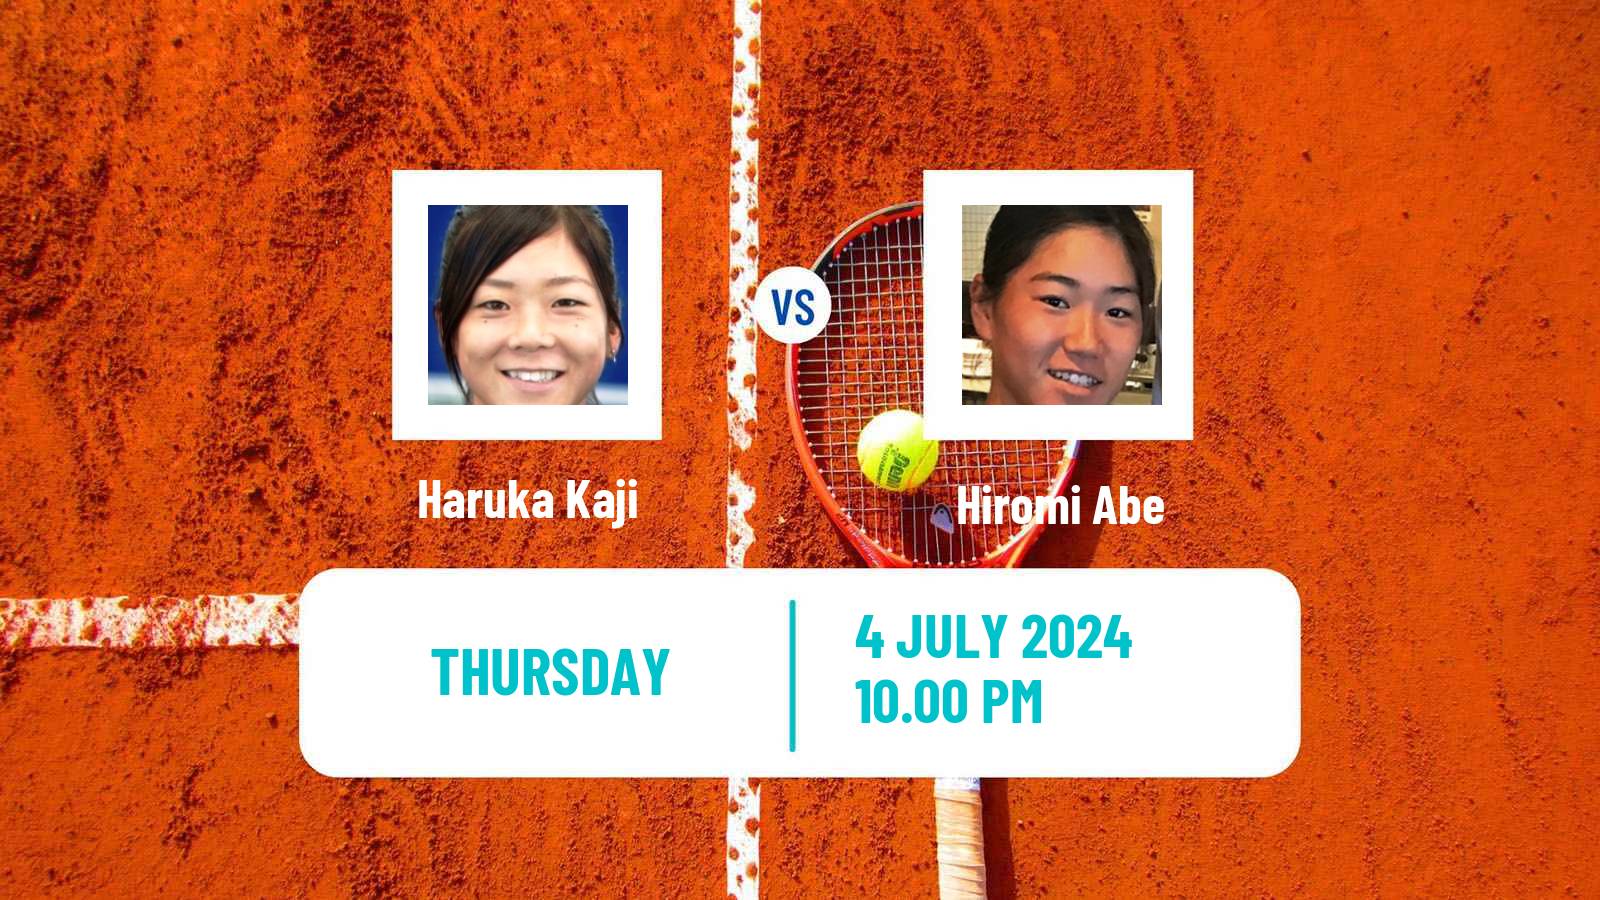 Tennis ITF W35 Hong Kong Women Haruka Kaji - Hiromi Abe